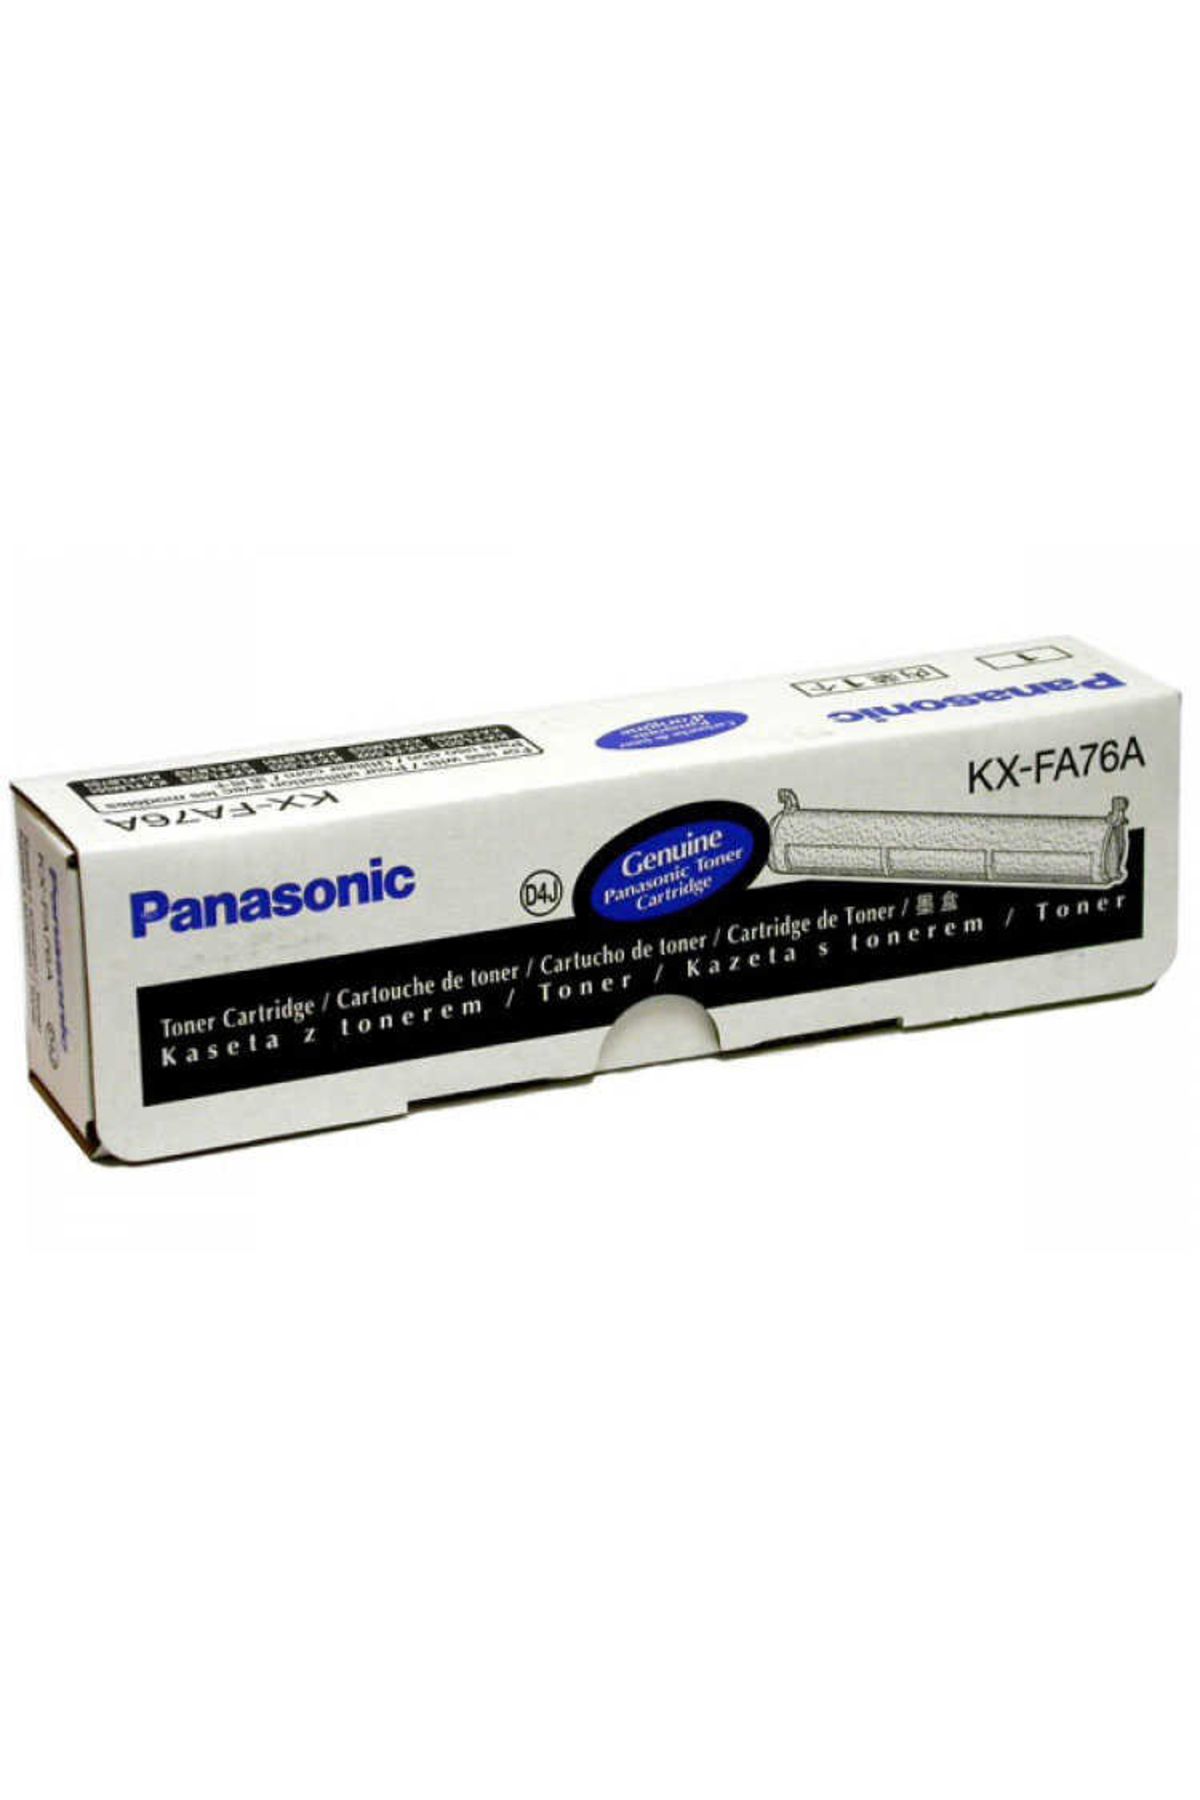 Panasonic HPZR Panasonic KX-FA76  Toner